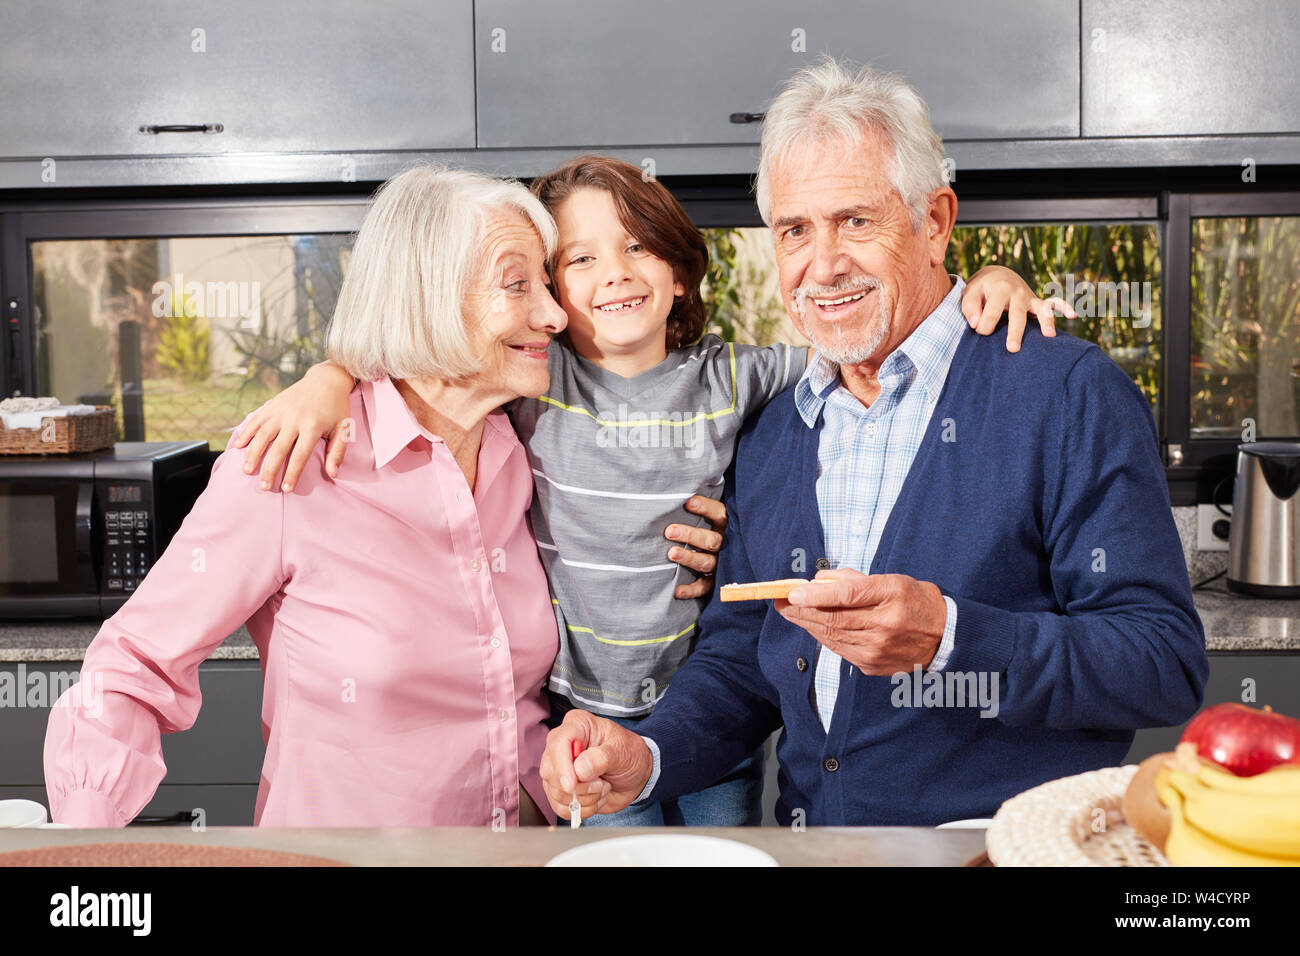 Happy Enkel zwischen Oma und Opa am Morgen in der Küche frühstücken Stockfoto